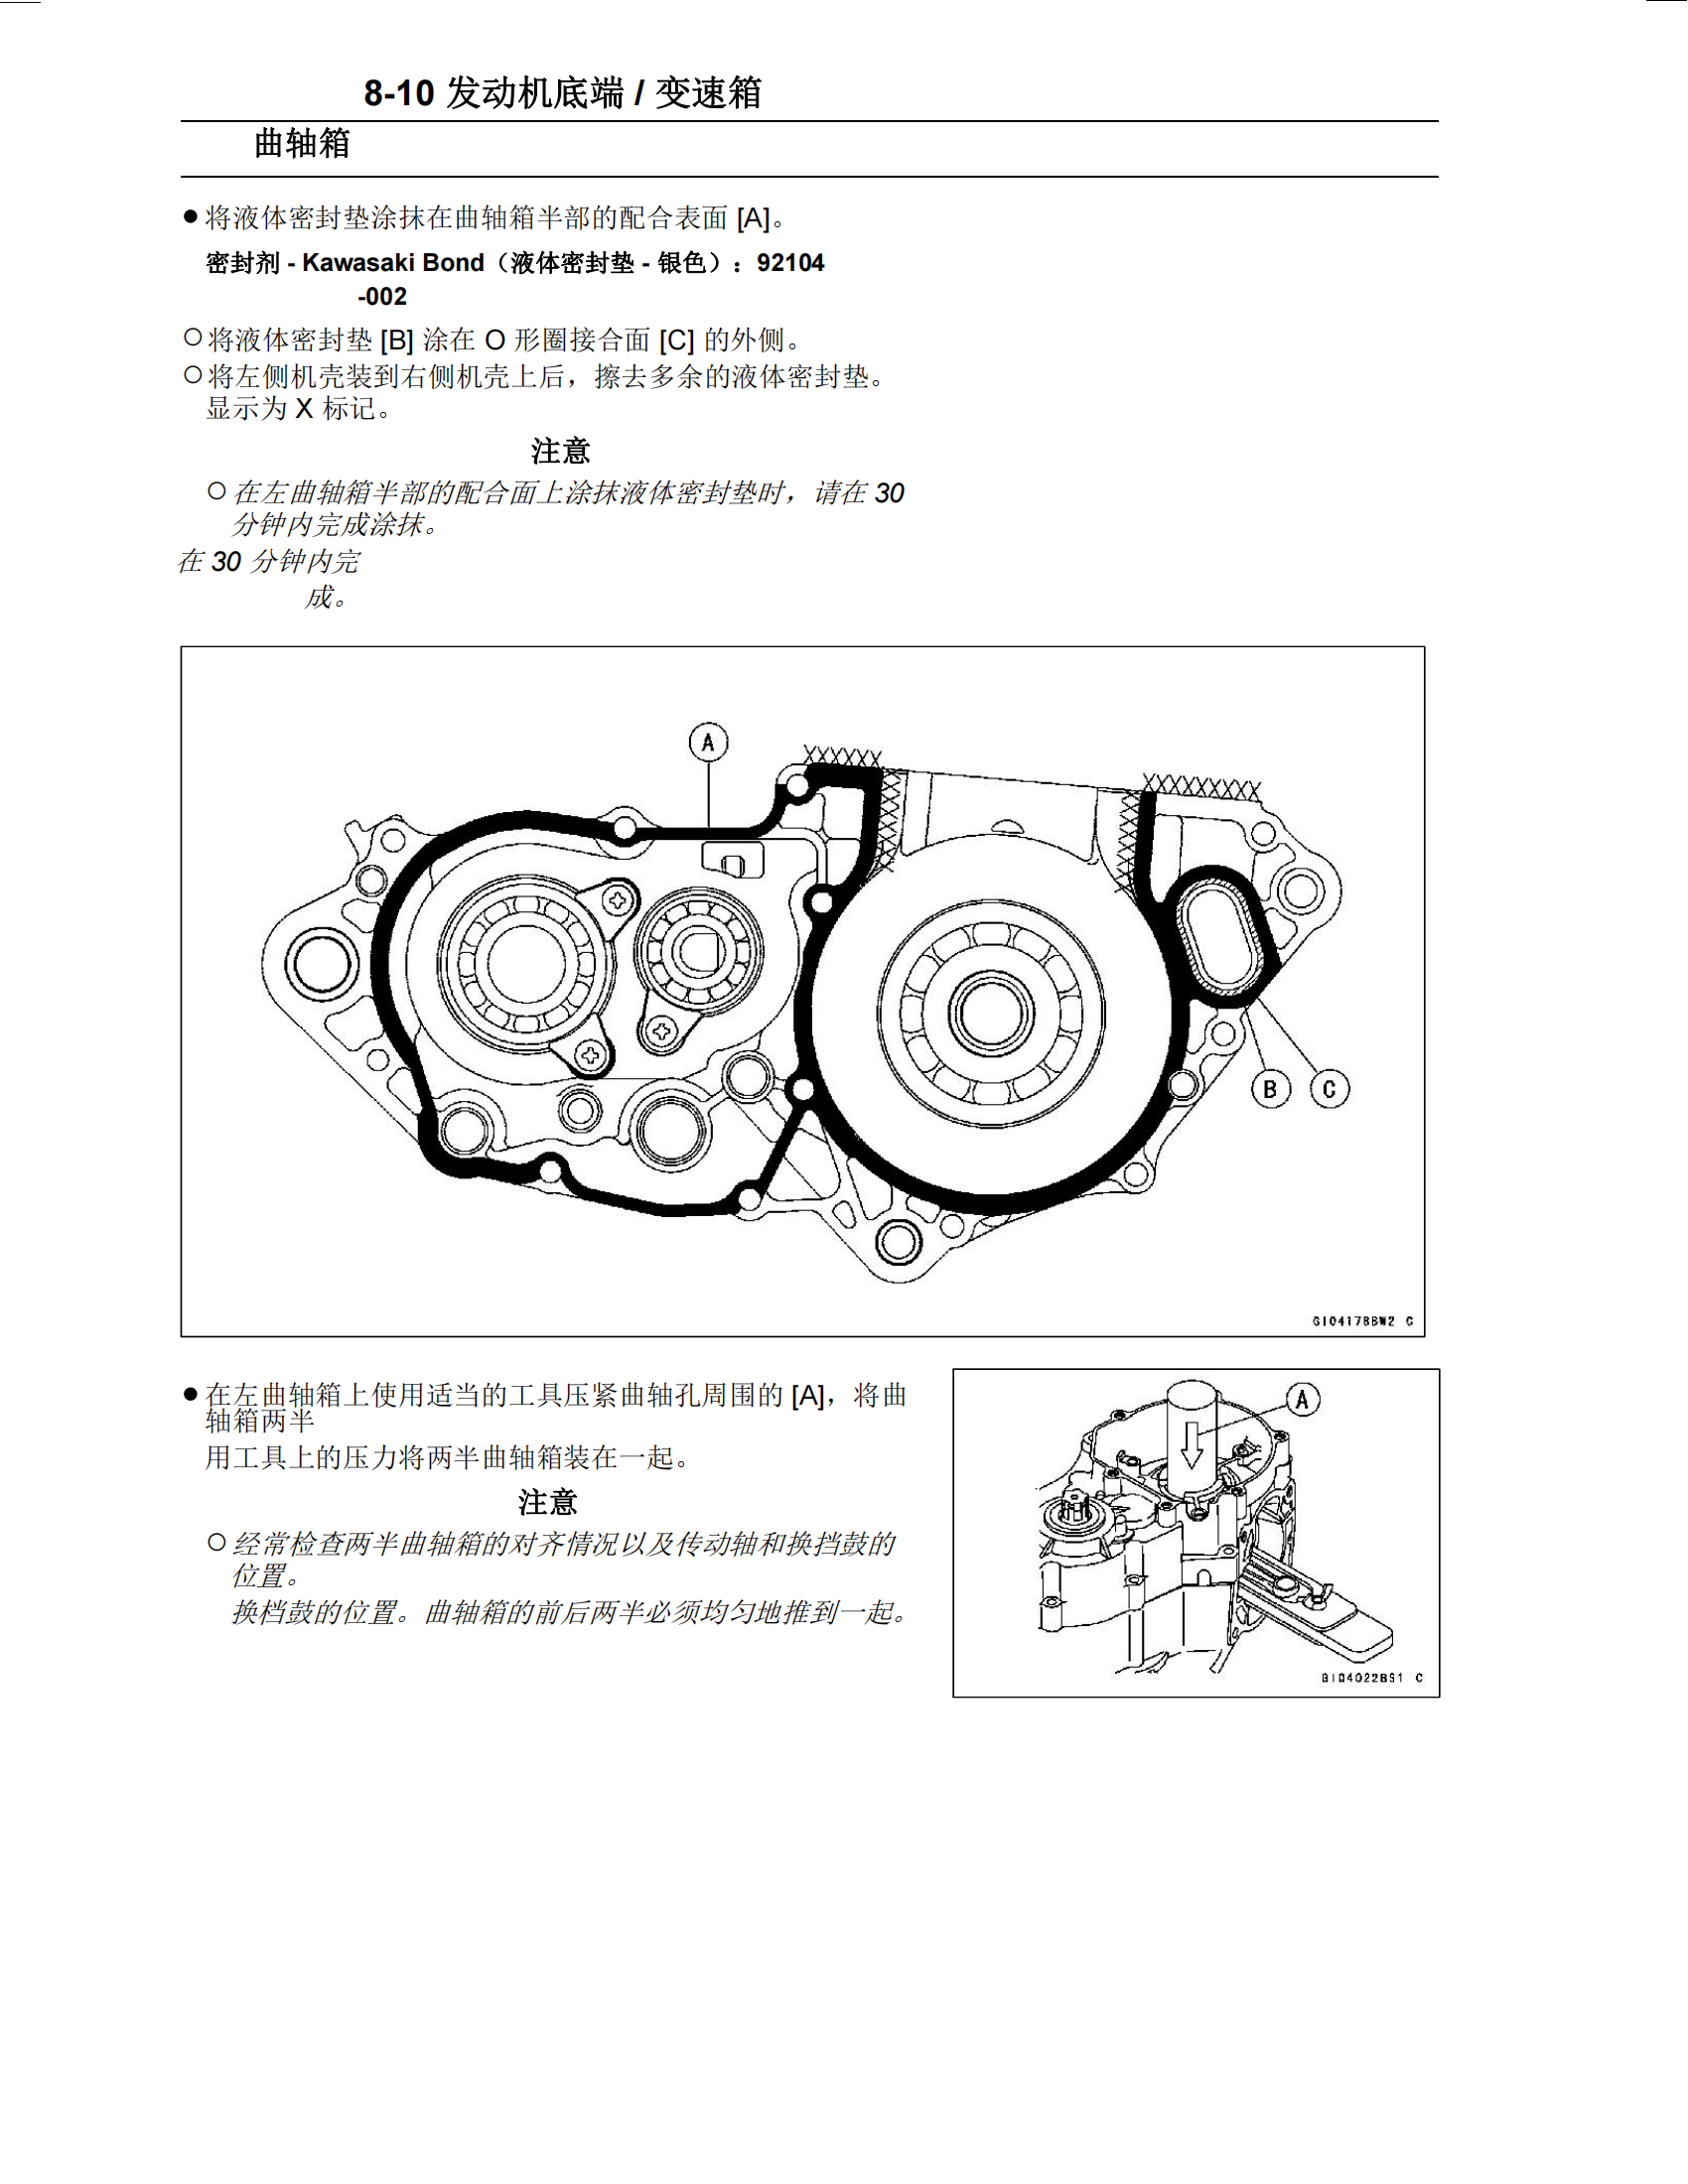 简体中文2005-2008年川崎kx250维修手册kawasaki kx250 维修手册插图4